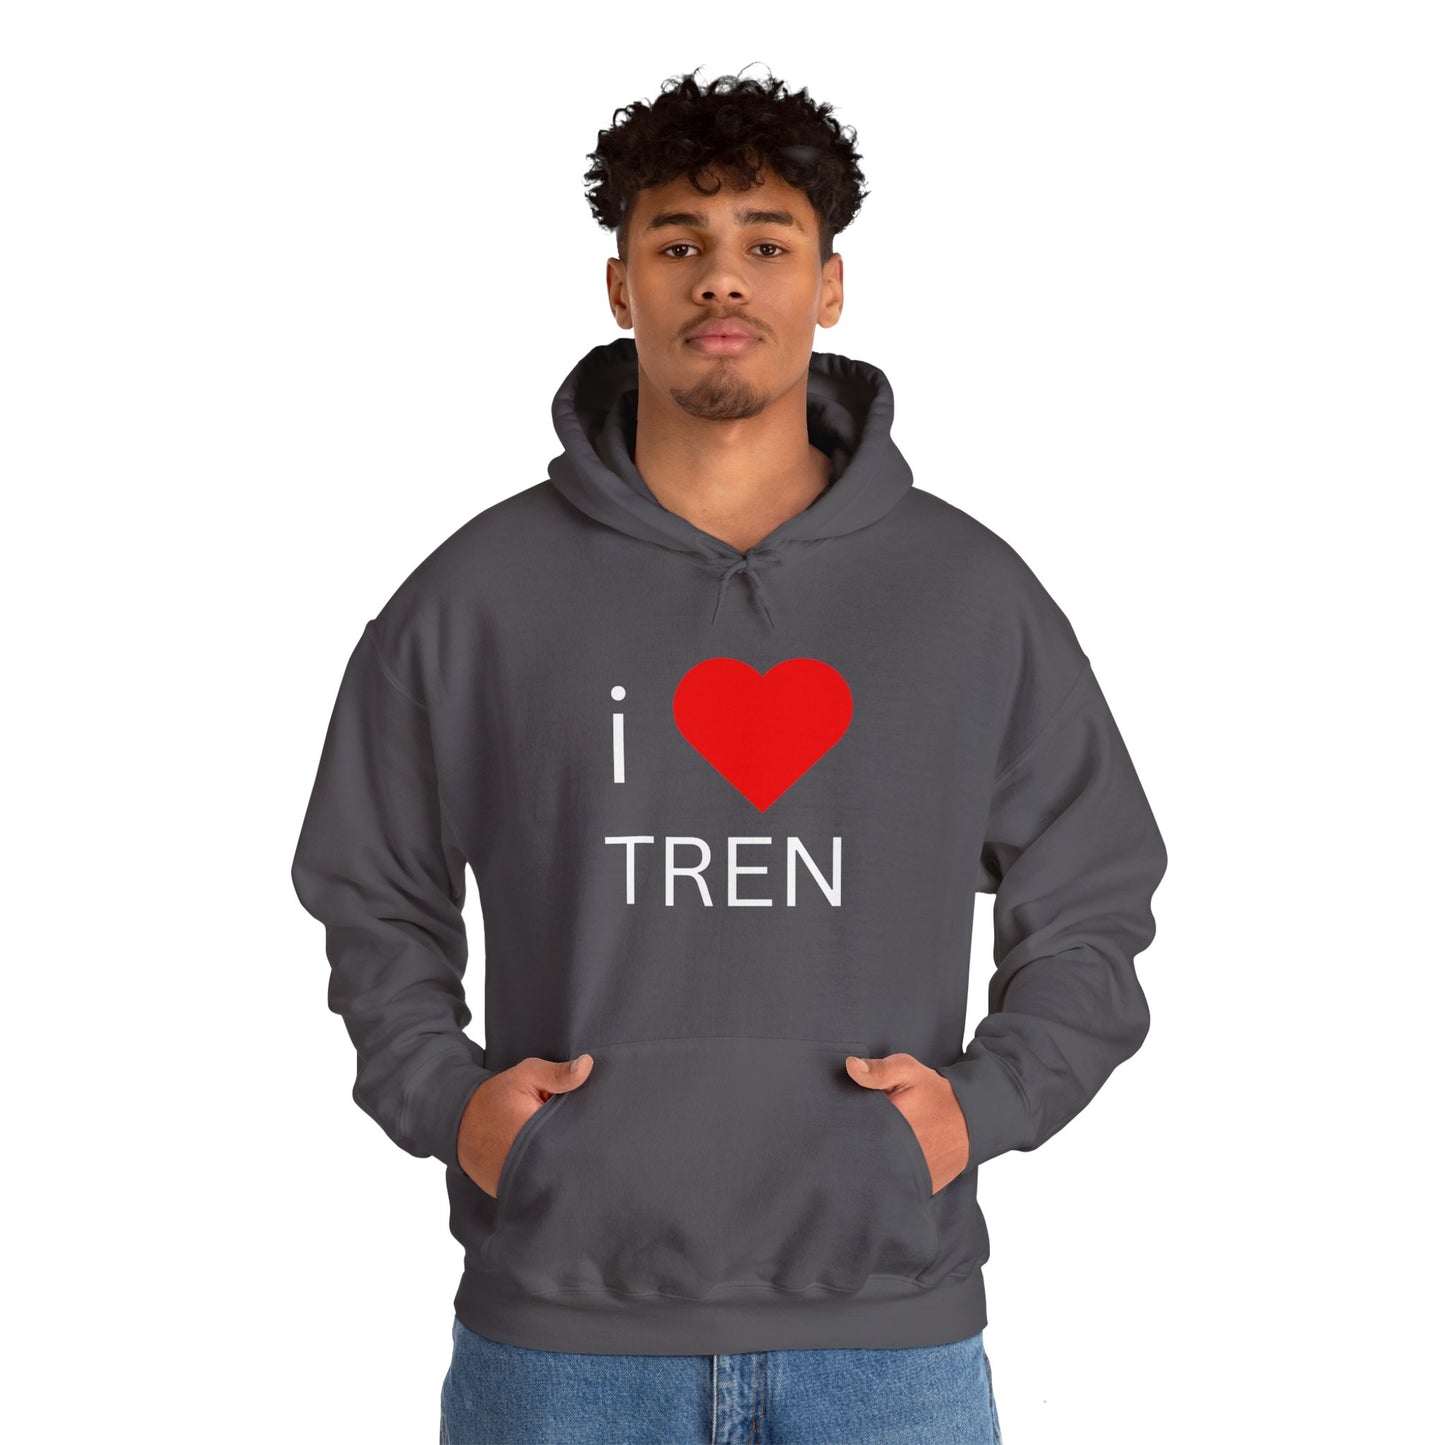 I Love Tren Hooded Sweatshirt - White Letters